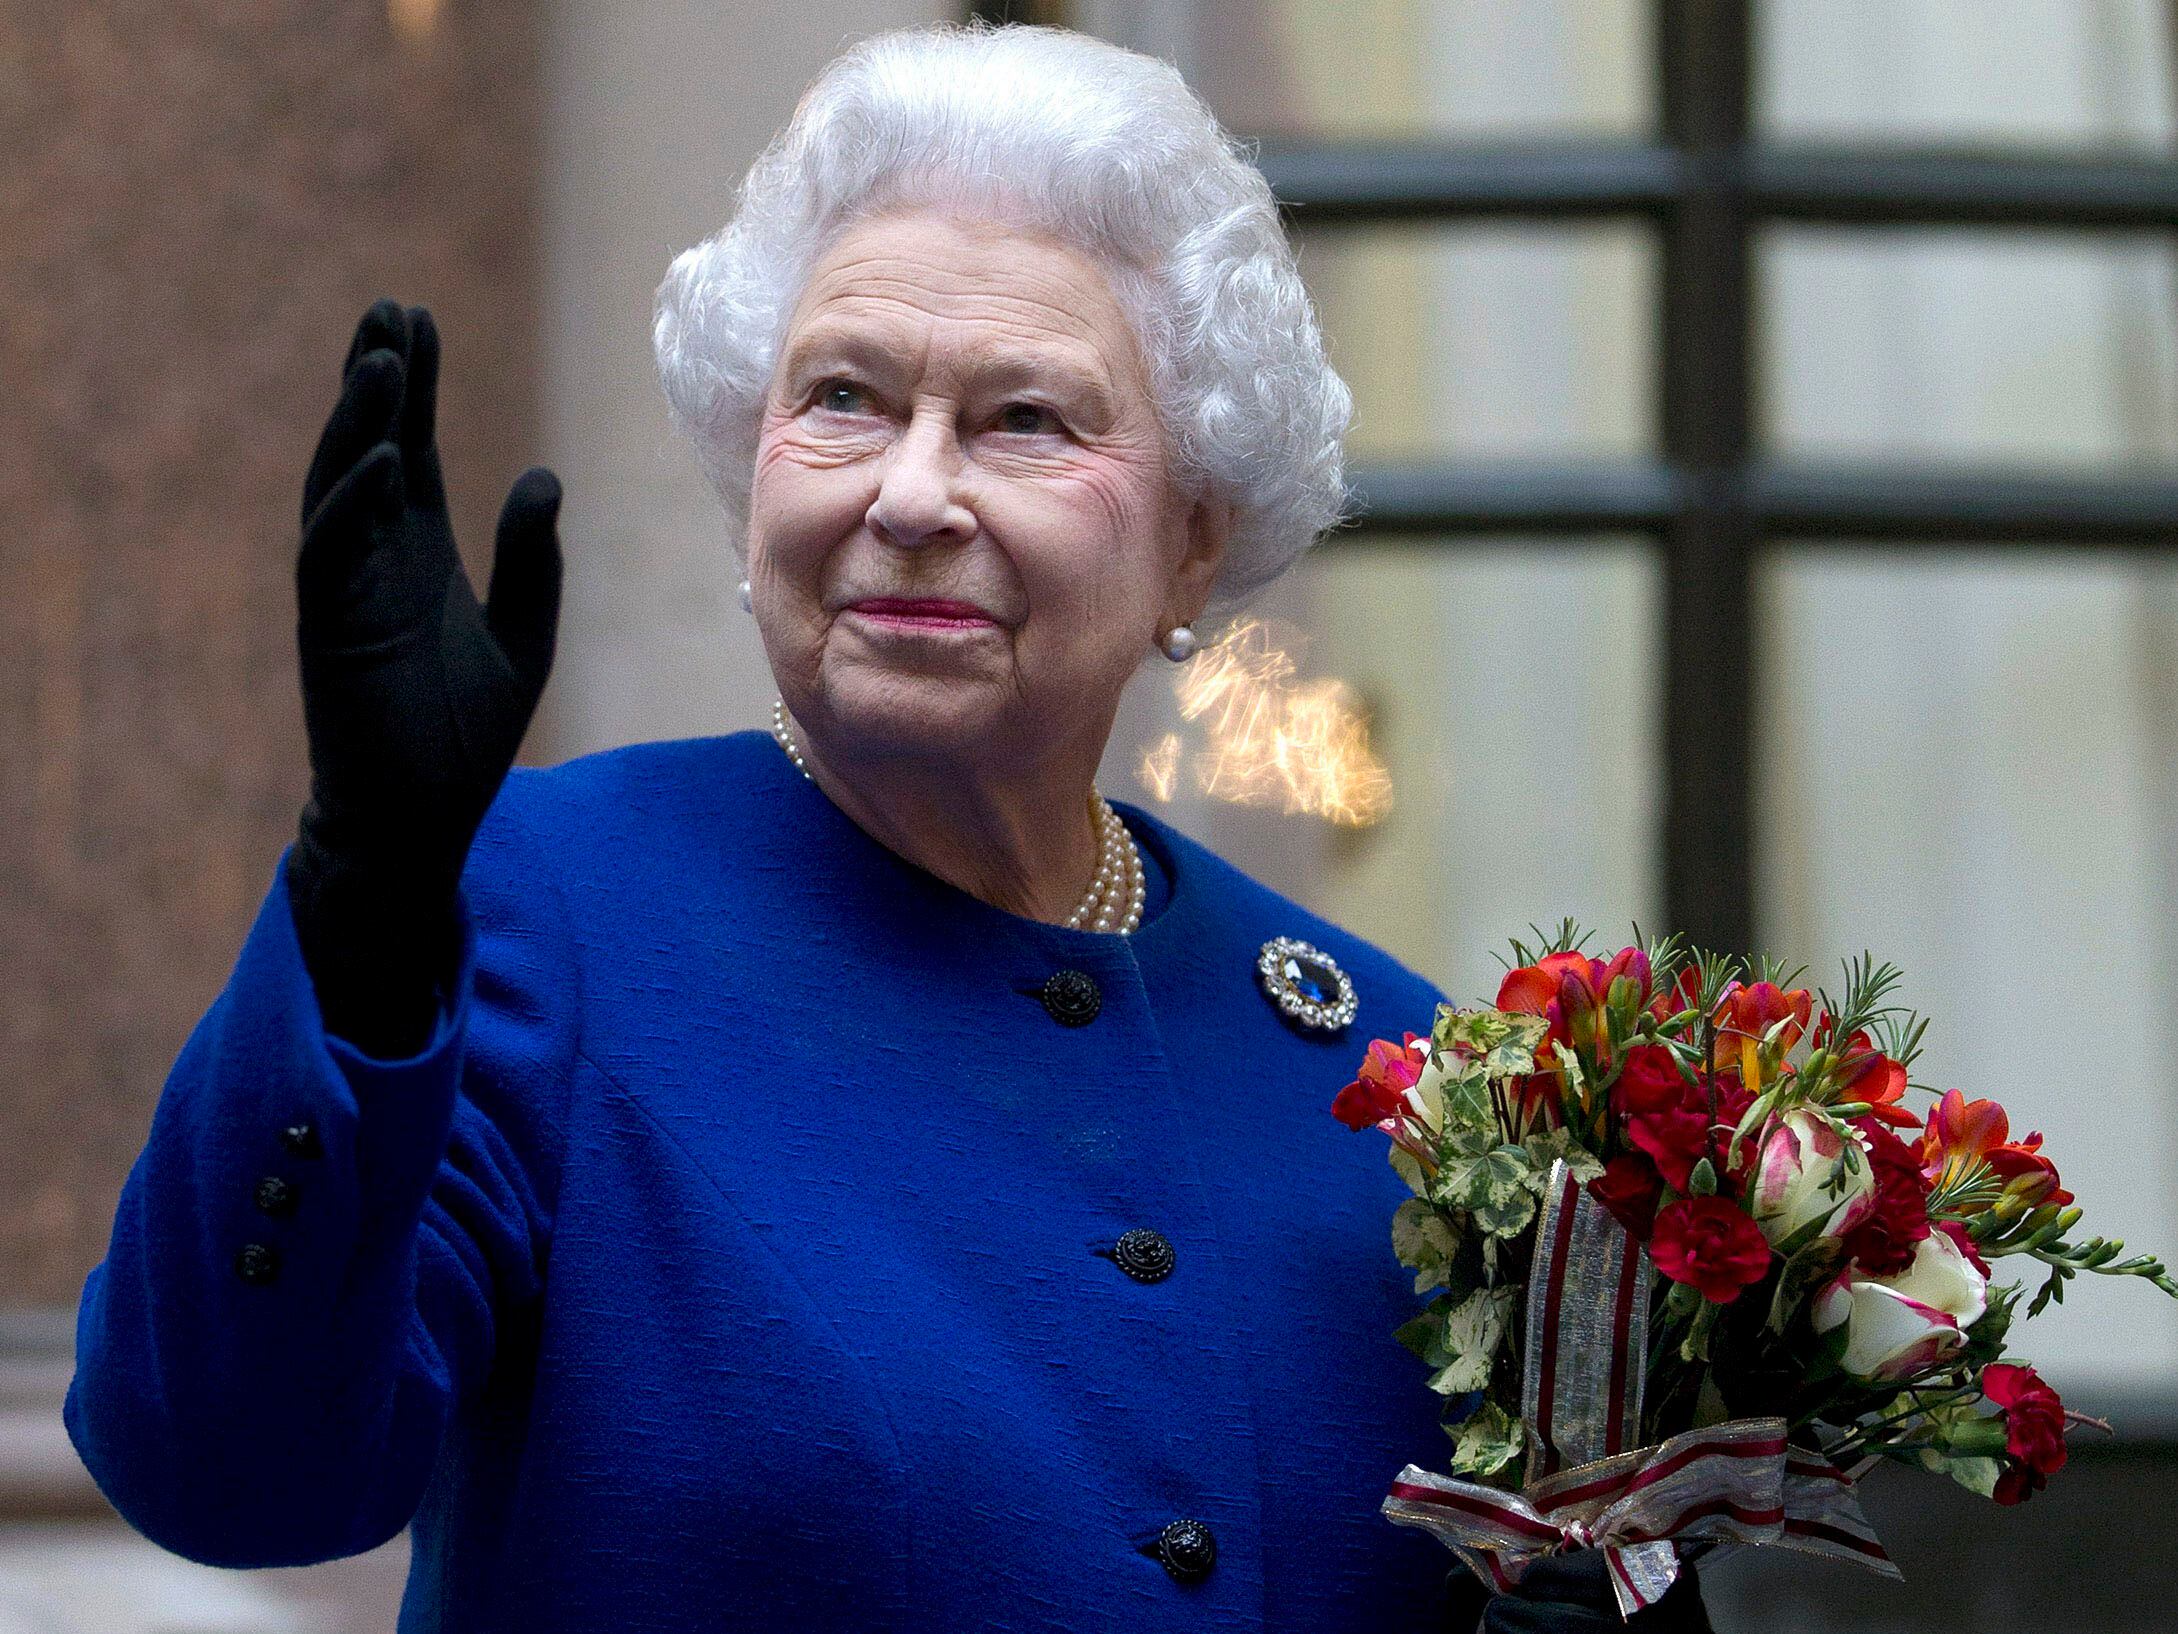 ARCHIVO - En imagen de archivo del martes 18 de diciembre de 2012, la reina Isabel II saluda a personal del Ministerio de Relaciones Exteriores y de la Mancomunidad de Naciones al final de una visita oficial en Londres. (AP Foto/Alastair Grant Pool, archivo)